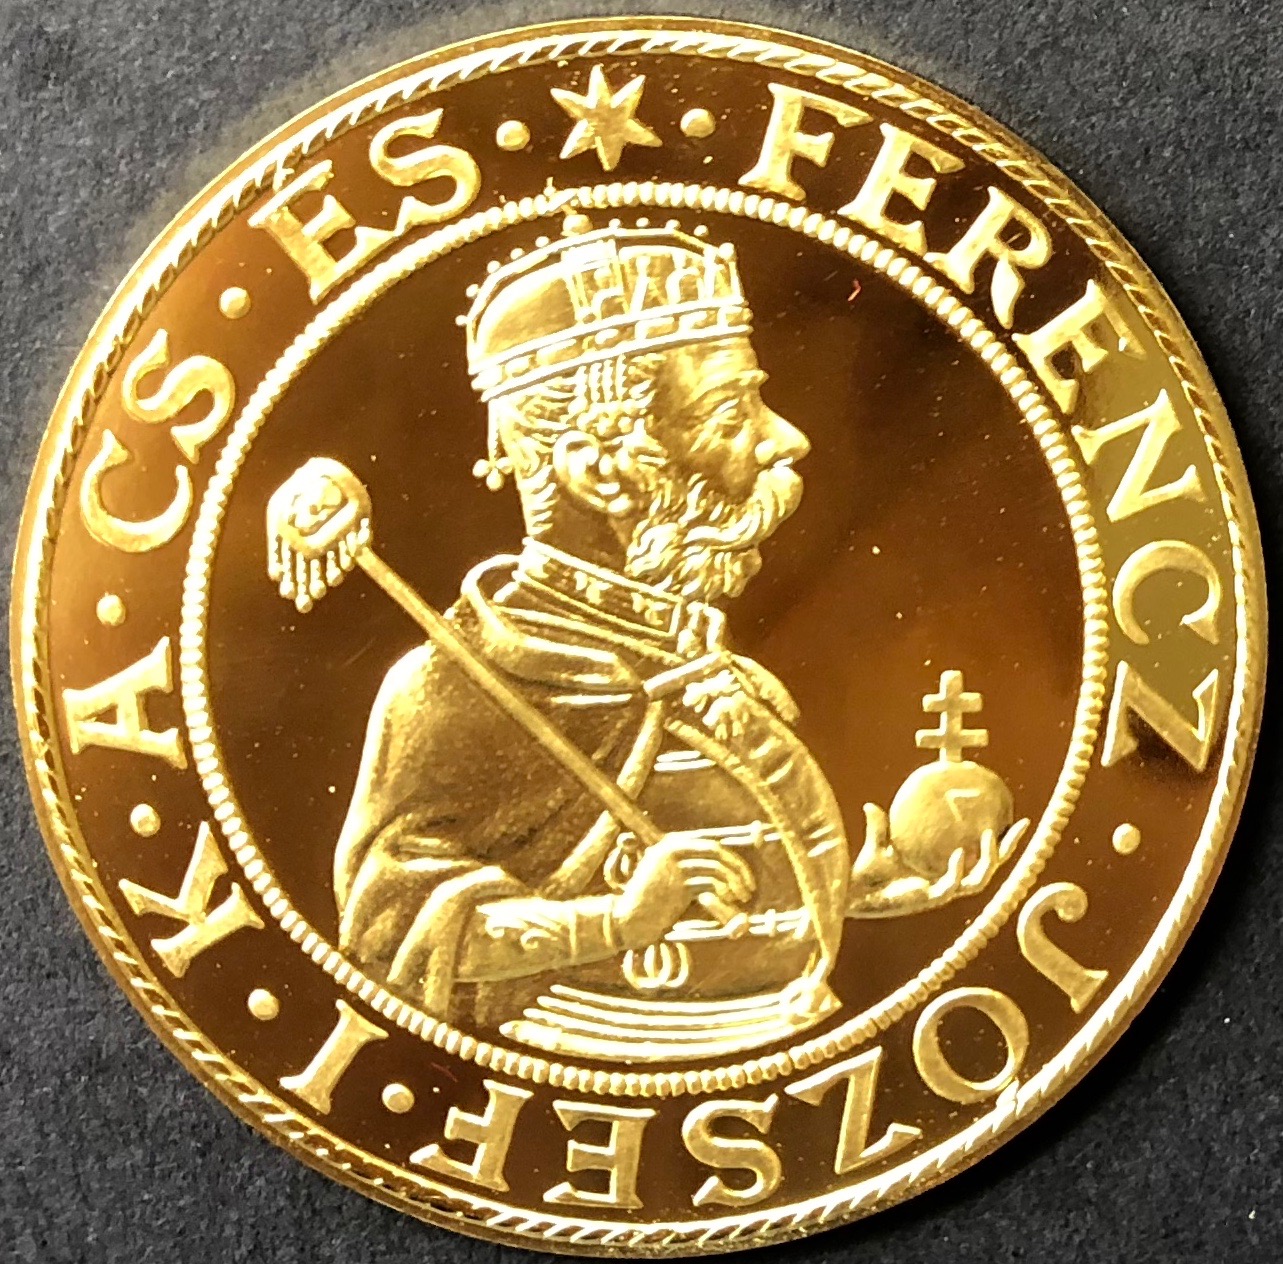 PREMIUM GOLD COIN - 大型で希少で状態の良い金貨やメダルを取り扱っています。